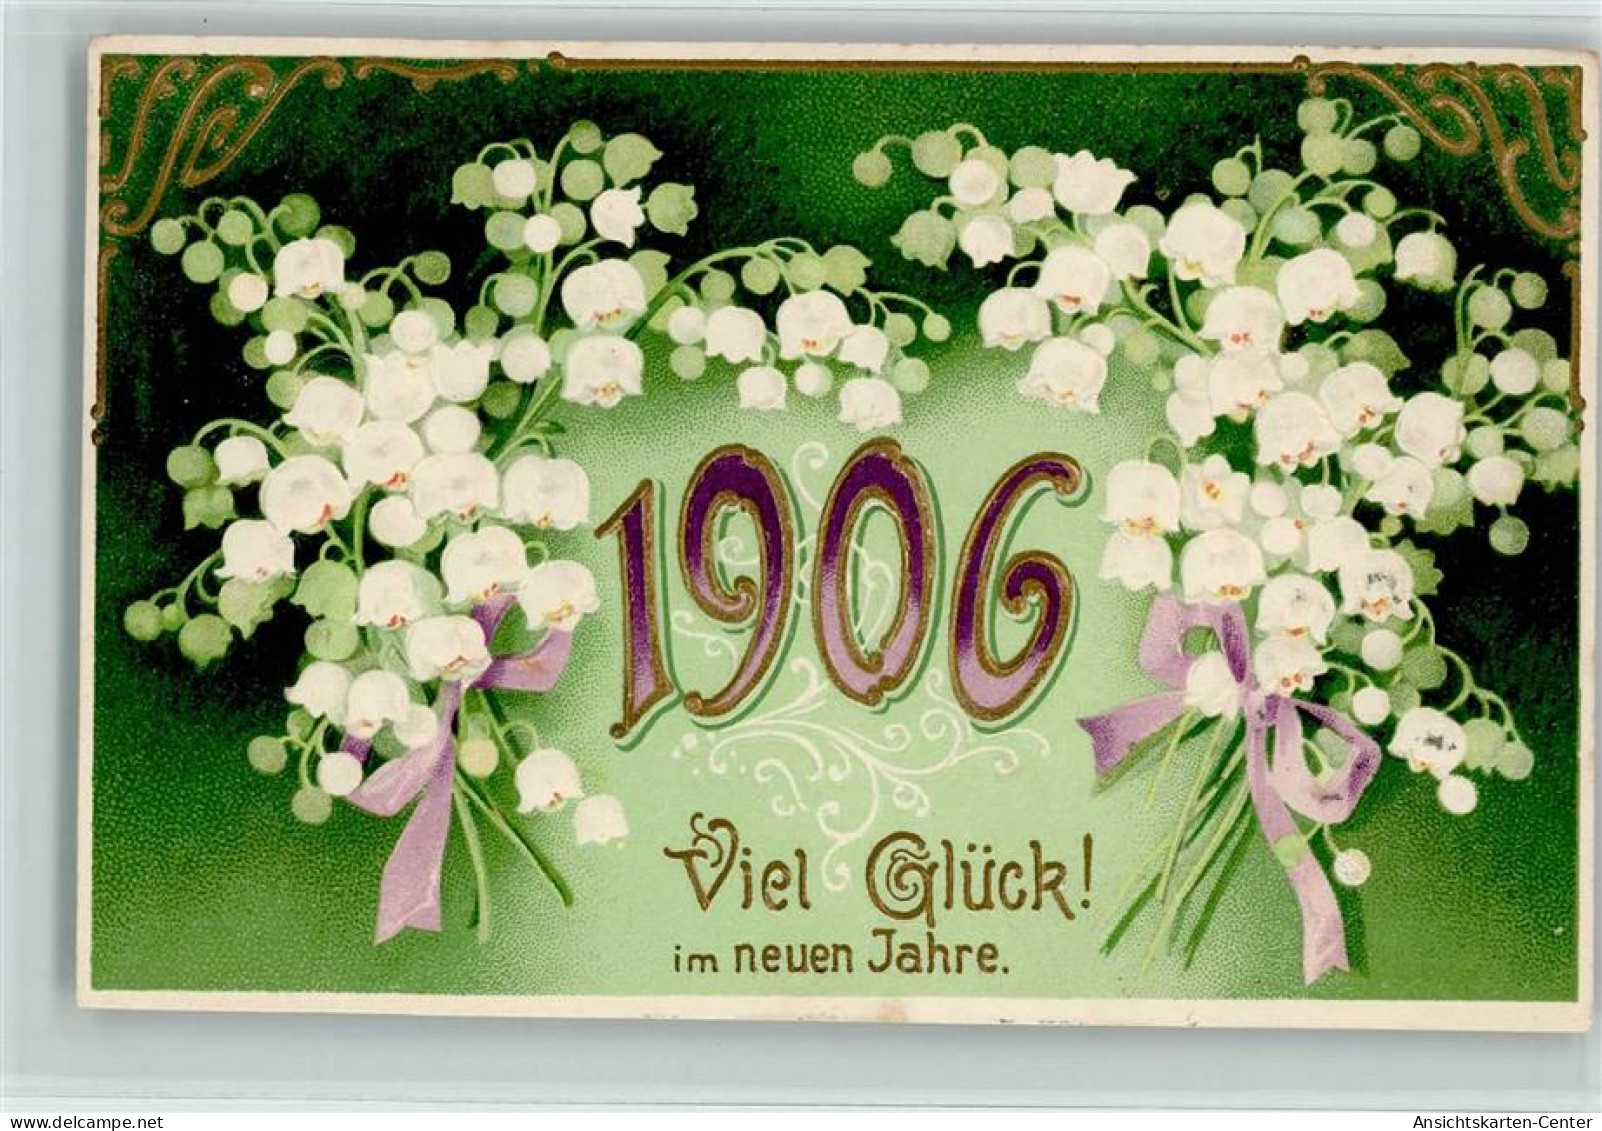 13103909 - Jahreszahlen Jahr 1906 , Maigloeckchen, Erika - Neujahr